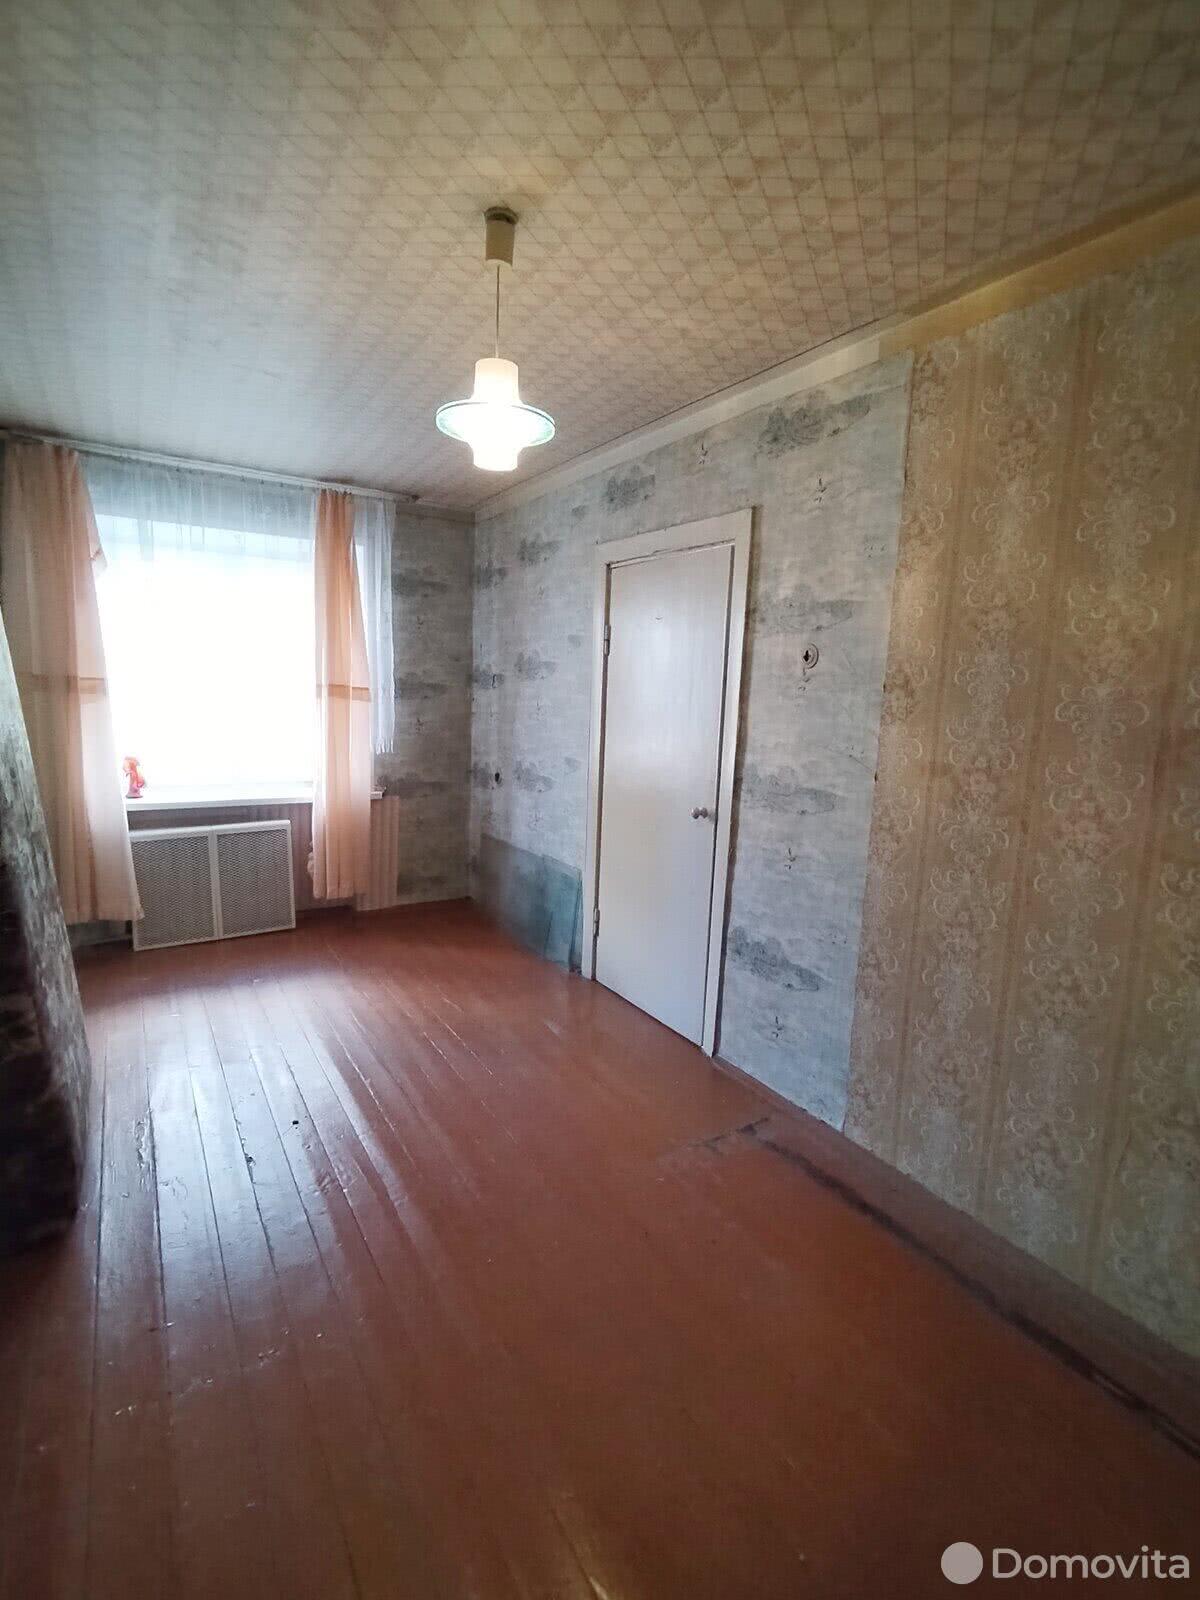 Цена продажи квартиры, Борисов, ул. Лопатина, д. 162